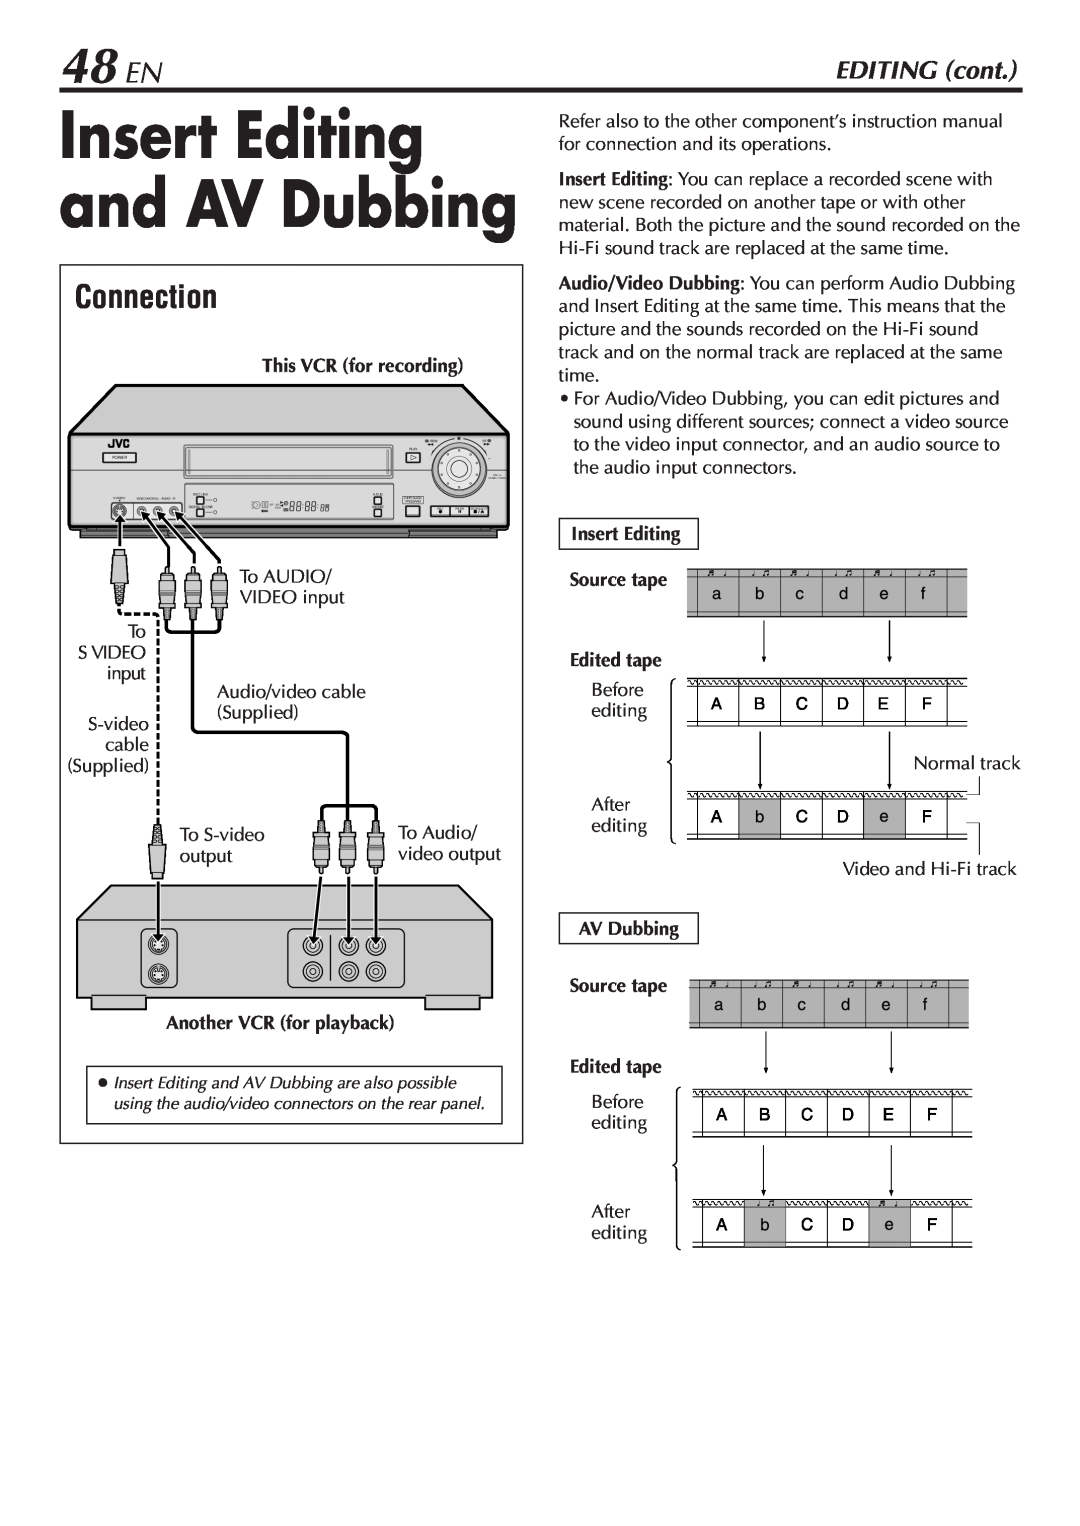 JVC SR-V10U manual 48 EN, Insert Editing and AV Dubbing, Connection, EDITING cont 